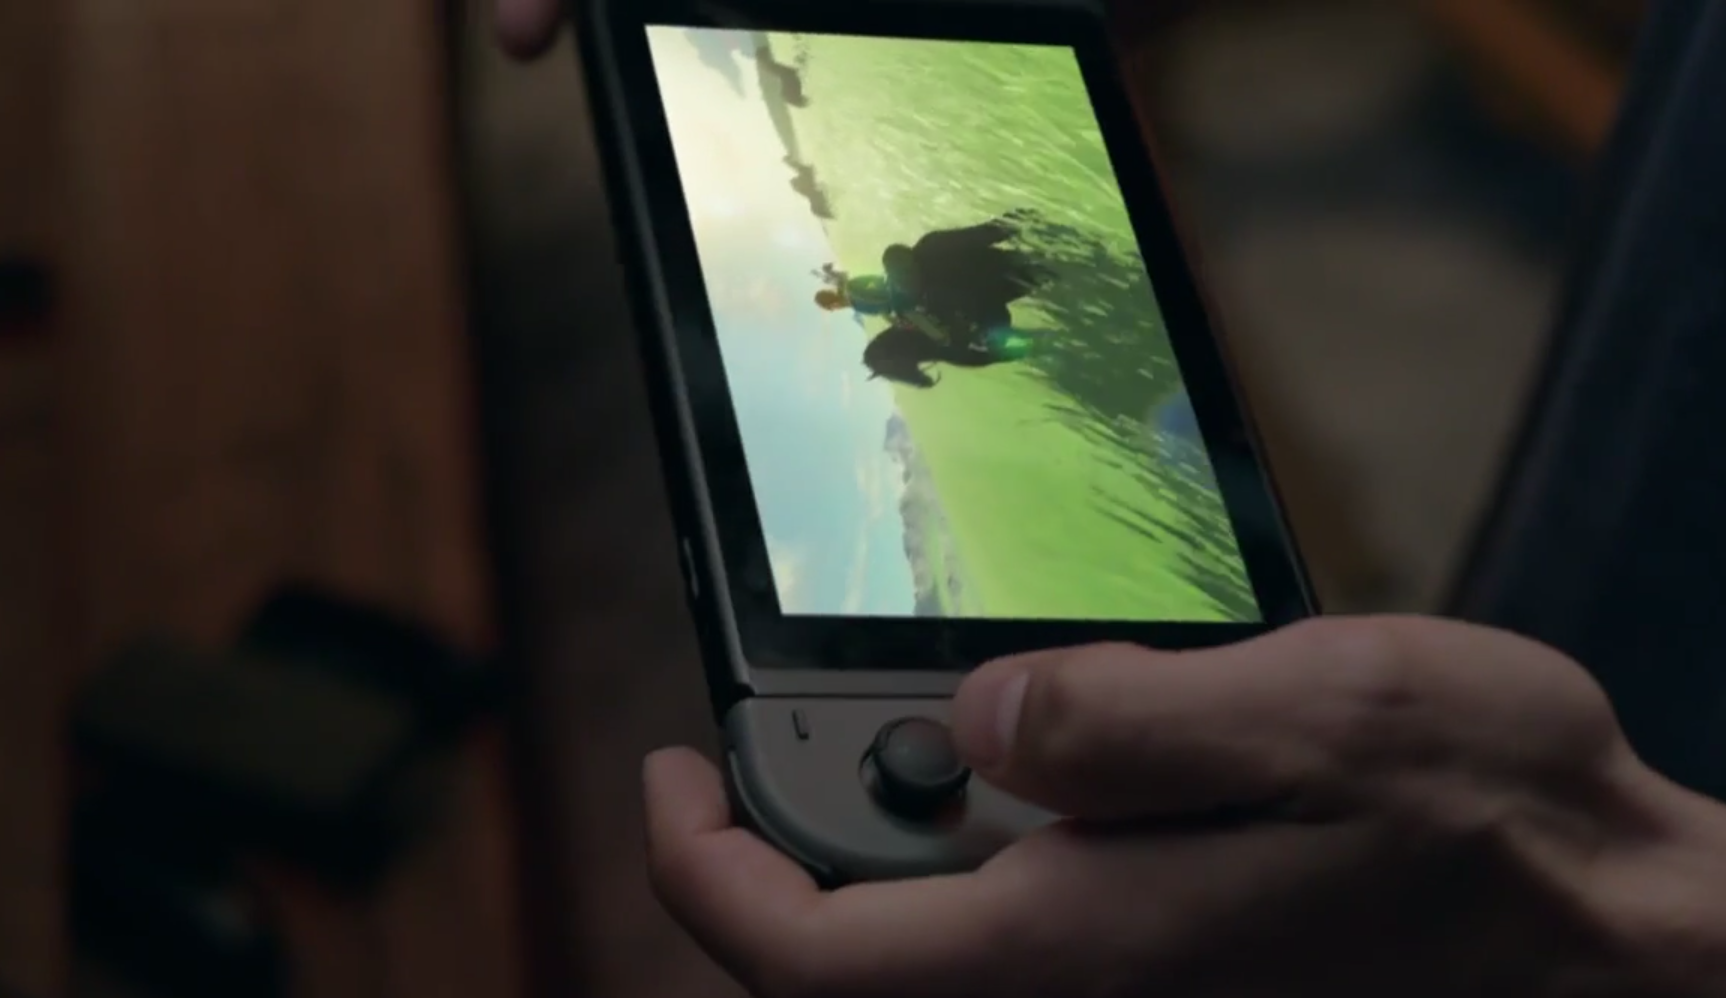 نینتندو از کنسول بازی جدید خود به نام نینتندو سوئیچ (Nintendo Switch) رونمایی کرد